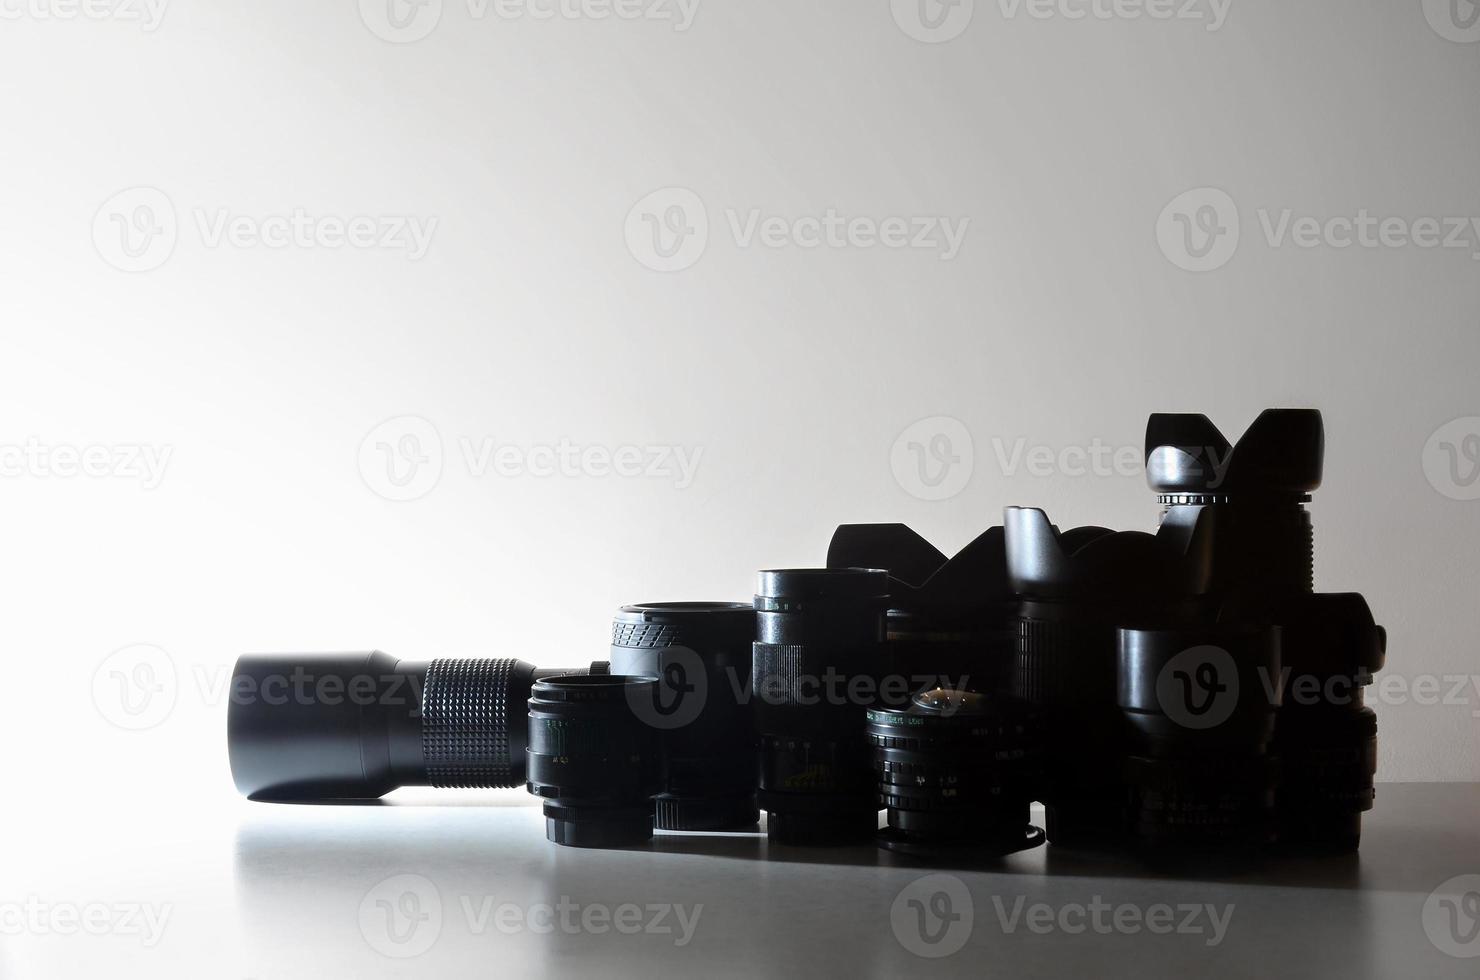 de nombreux objectifs professionnels différents pour appareil photo reflex se trouvent sur un bureau incolore